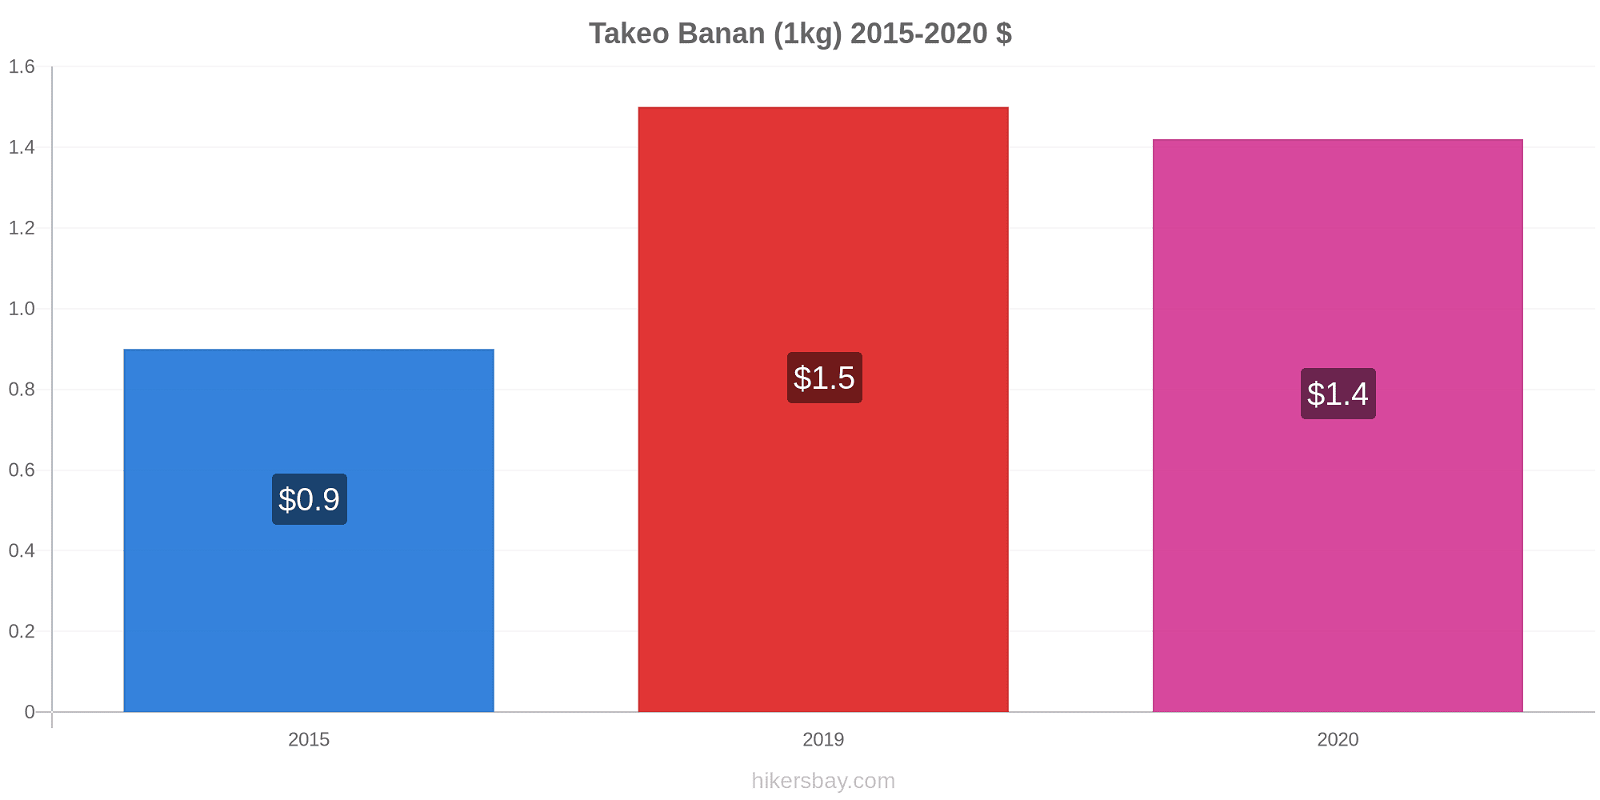 Takeo prisförändringar Banan (1kg) hikersbay.com